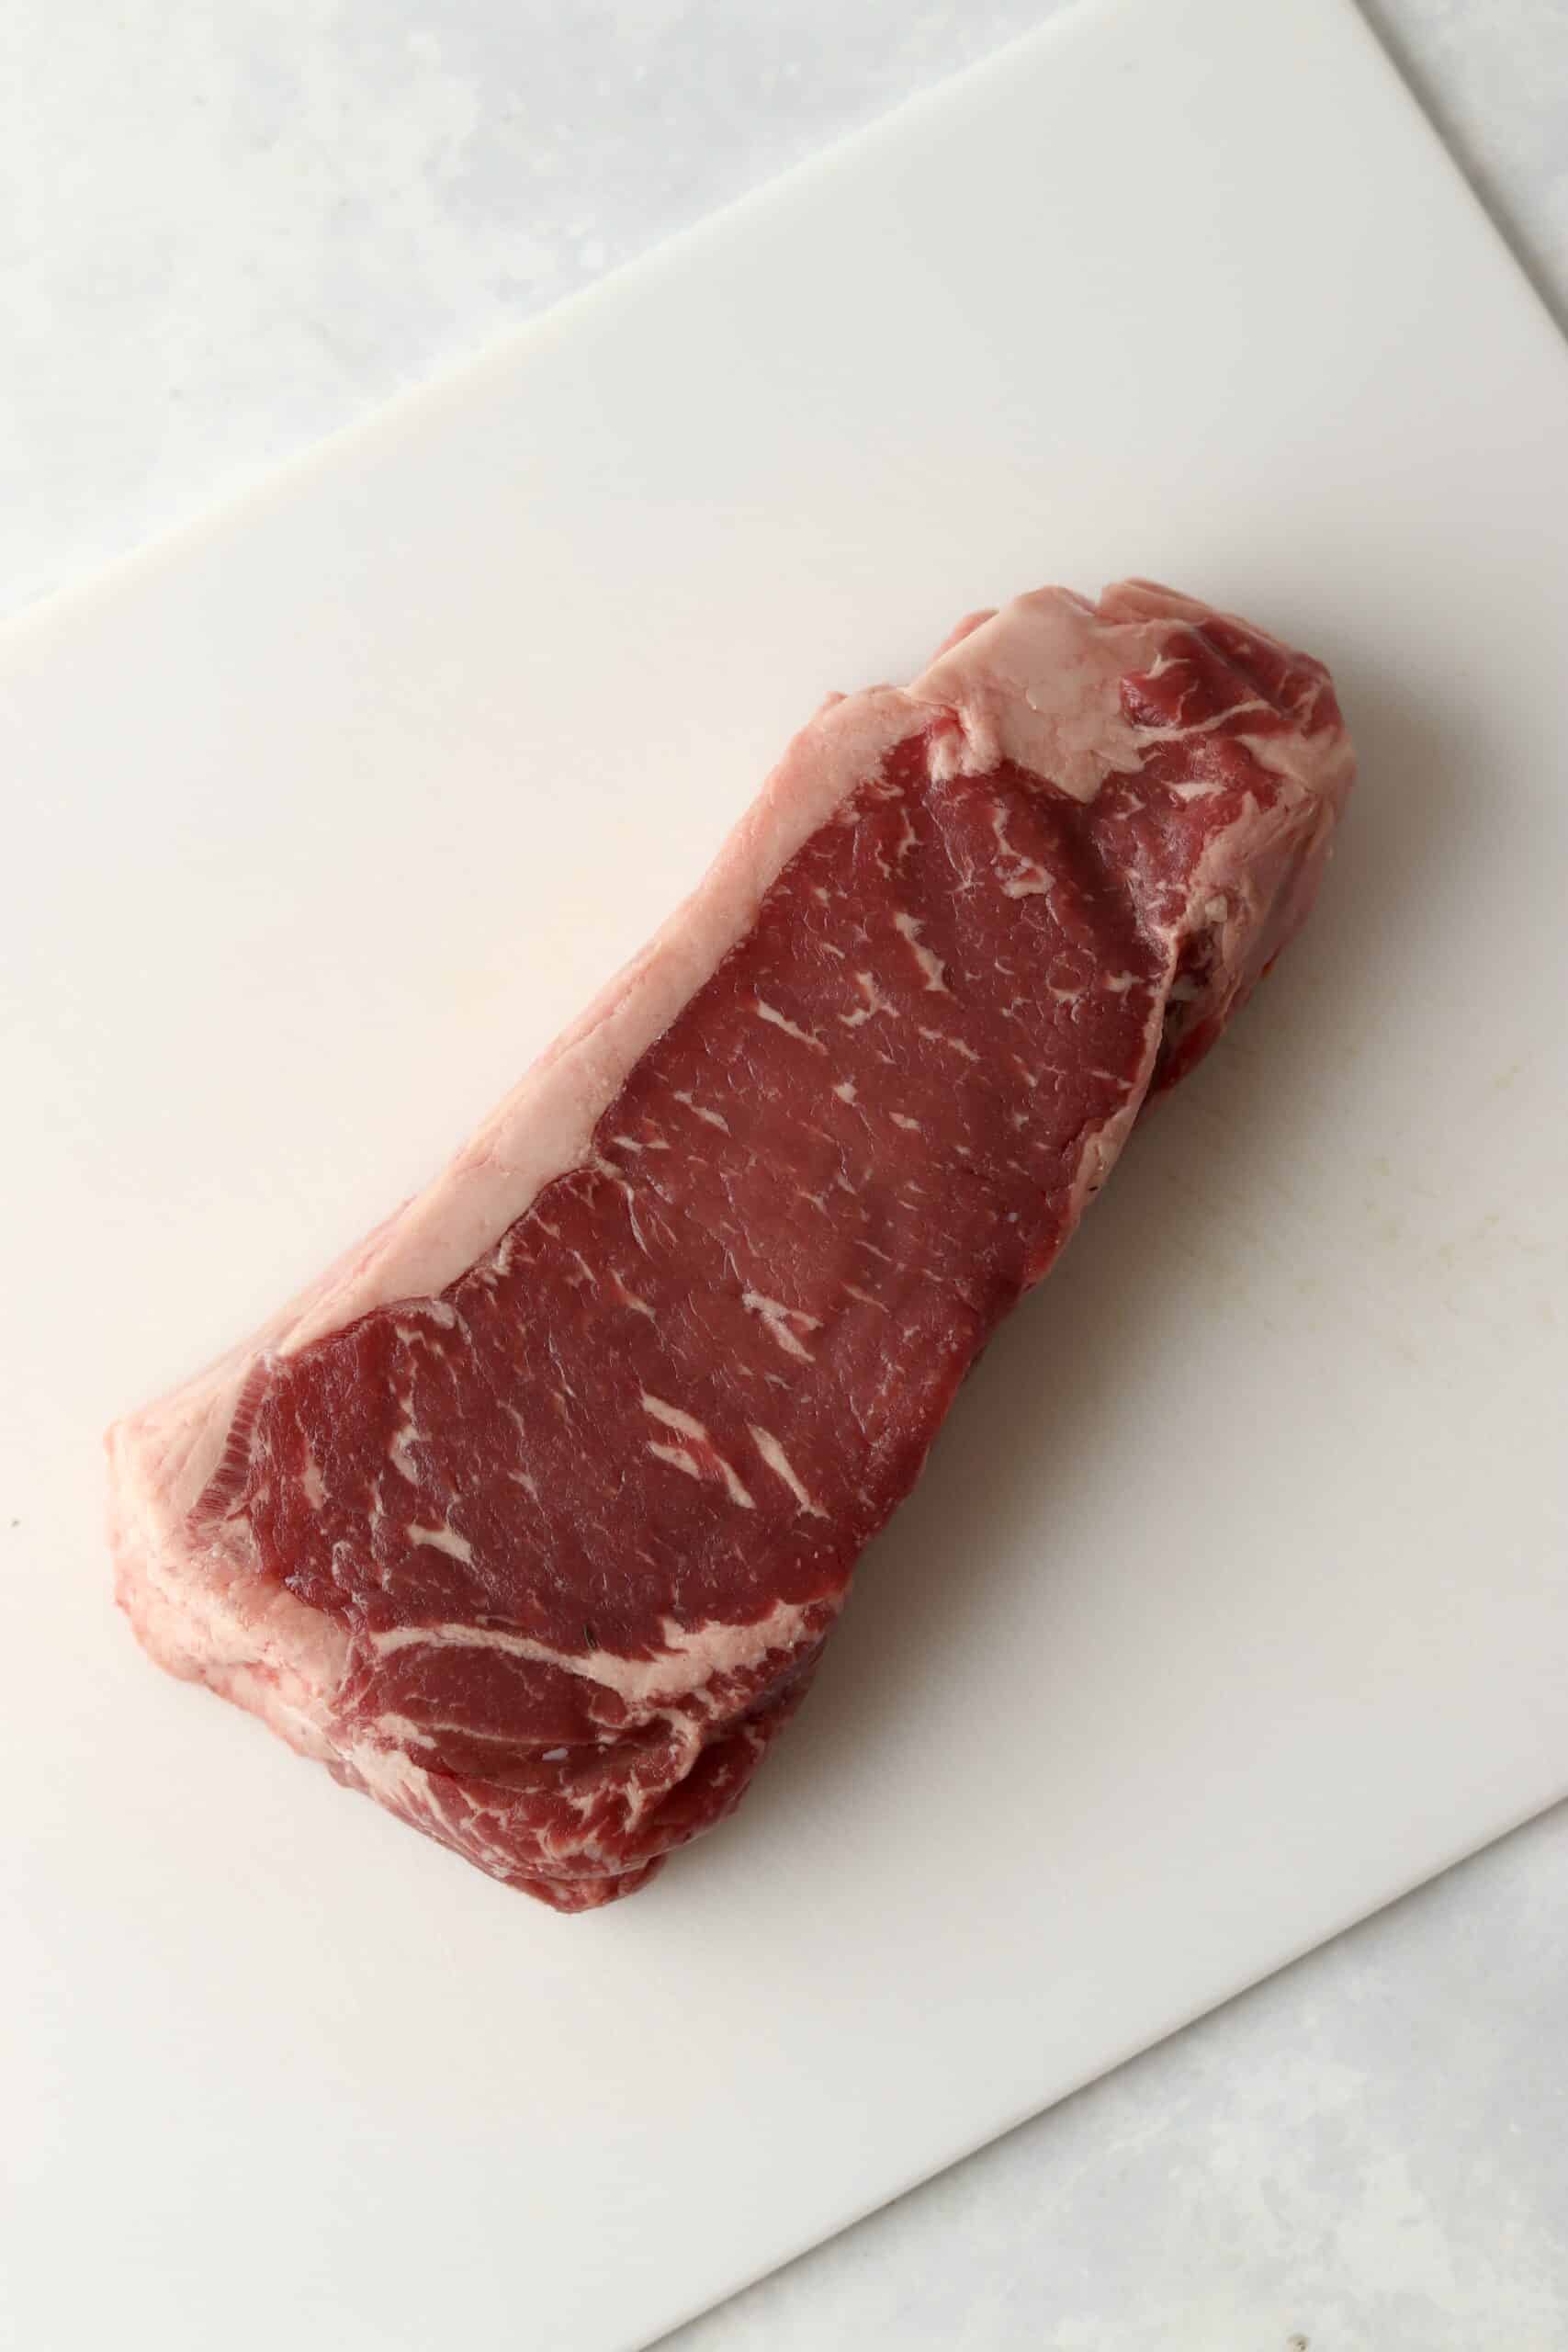 rib eye steak on cutting board